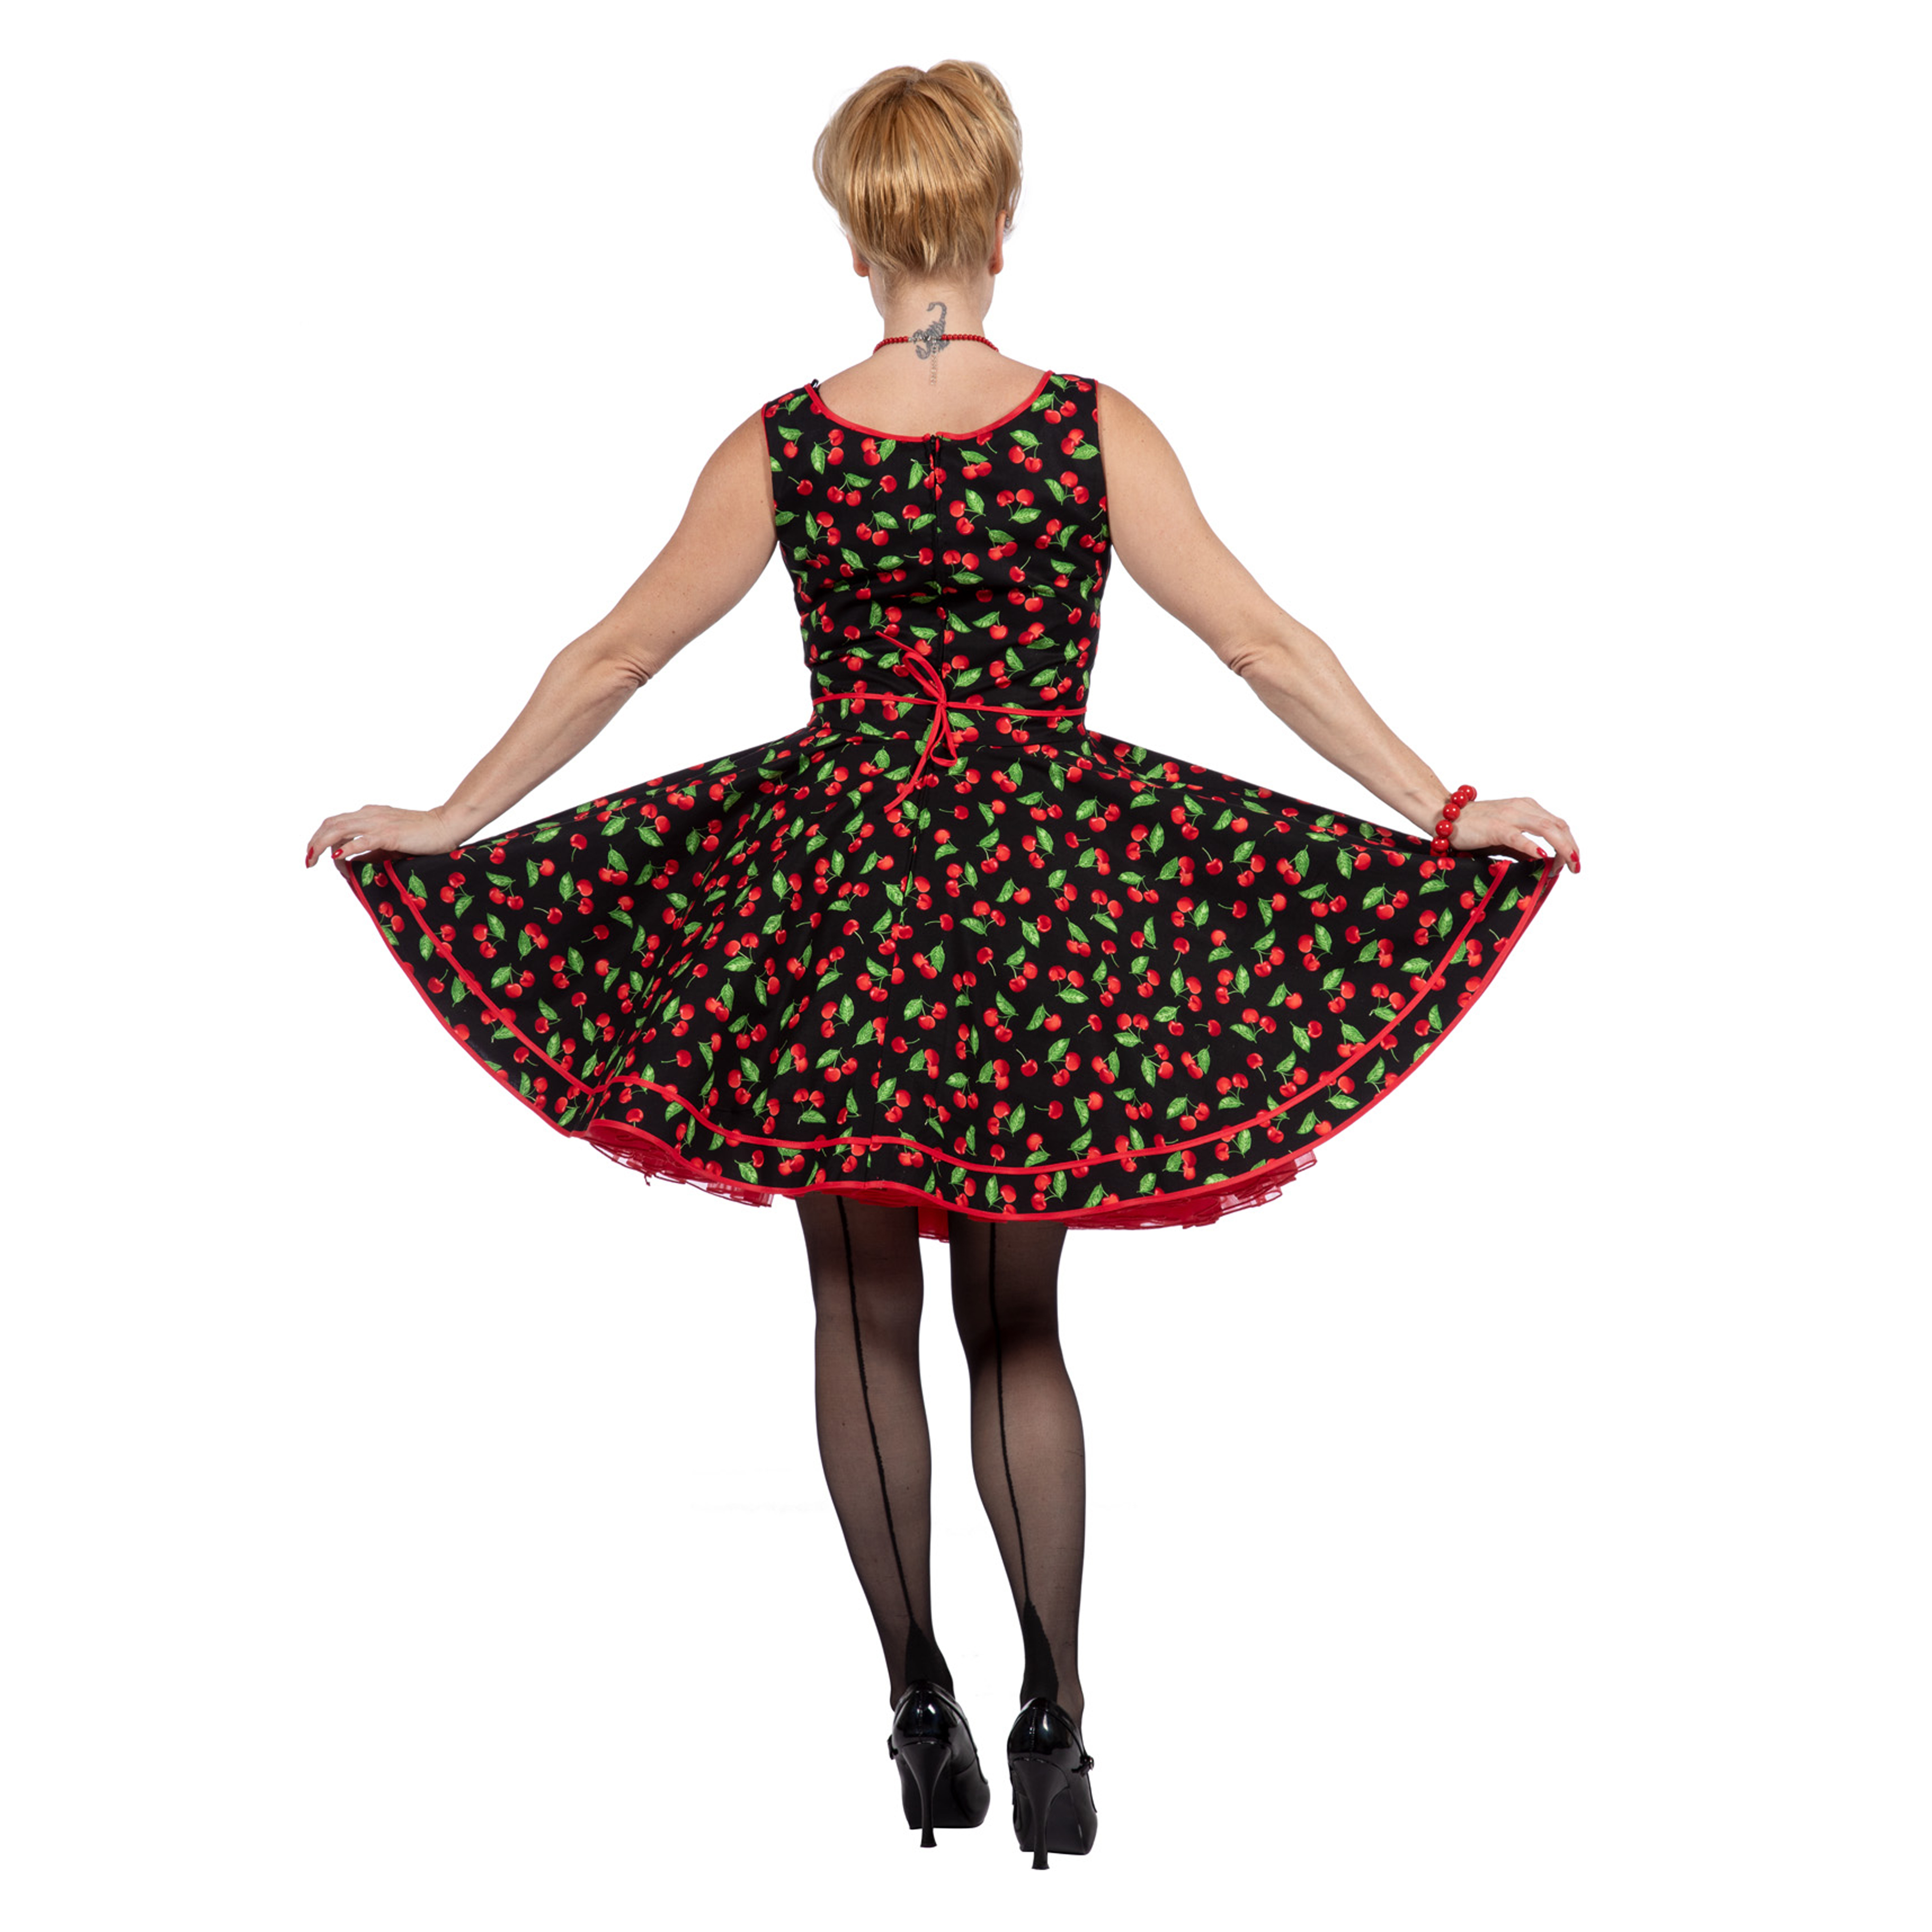 Premium-Line Damen-Kleid Rockabilly Cherry, Gr. 44 Bild 3